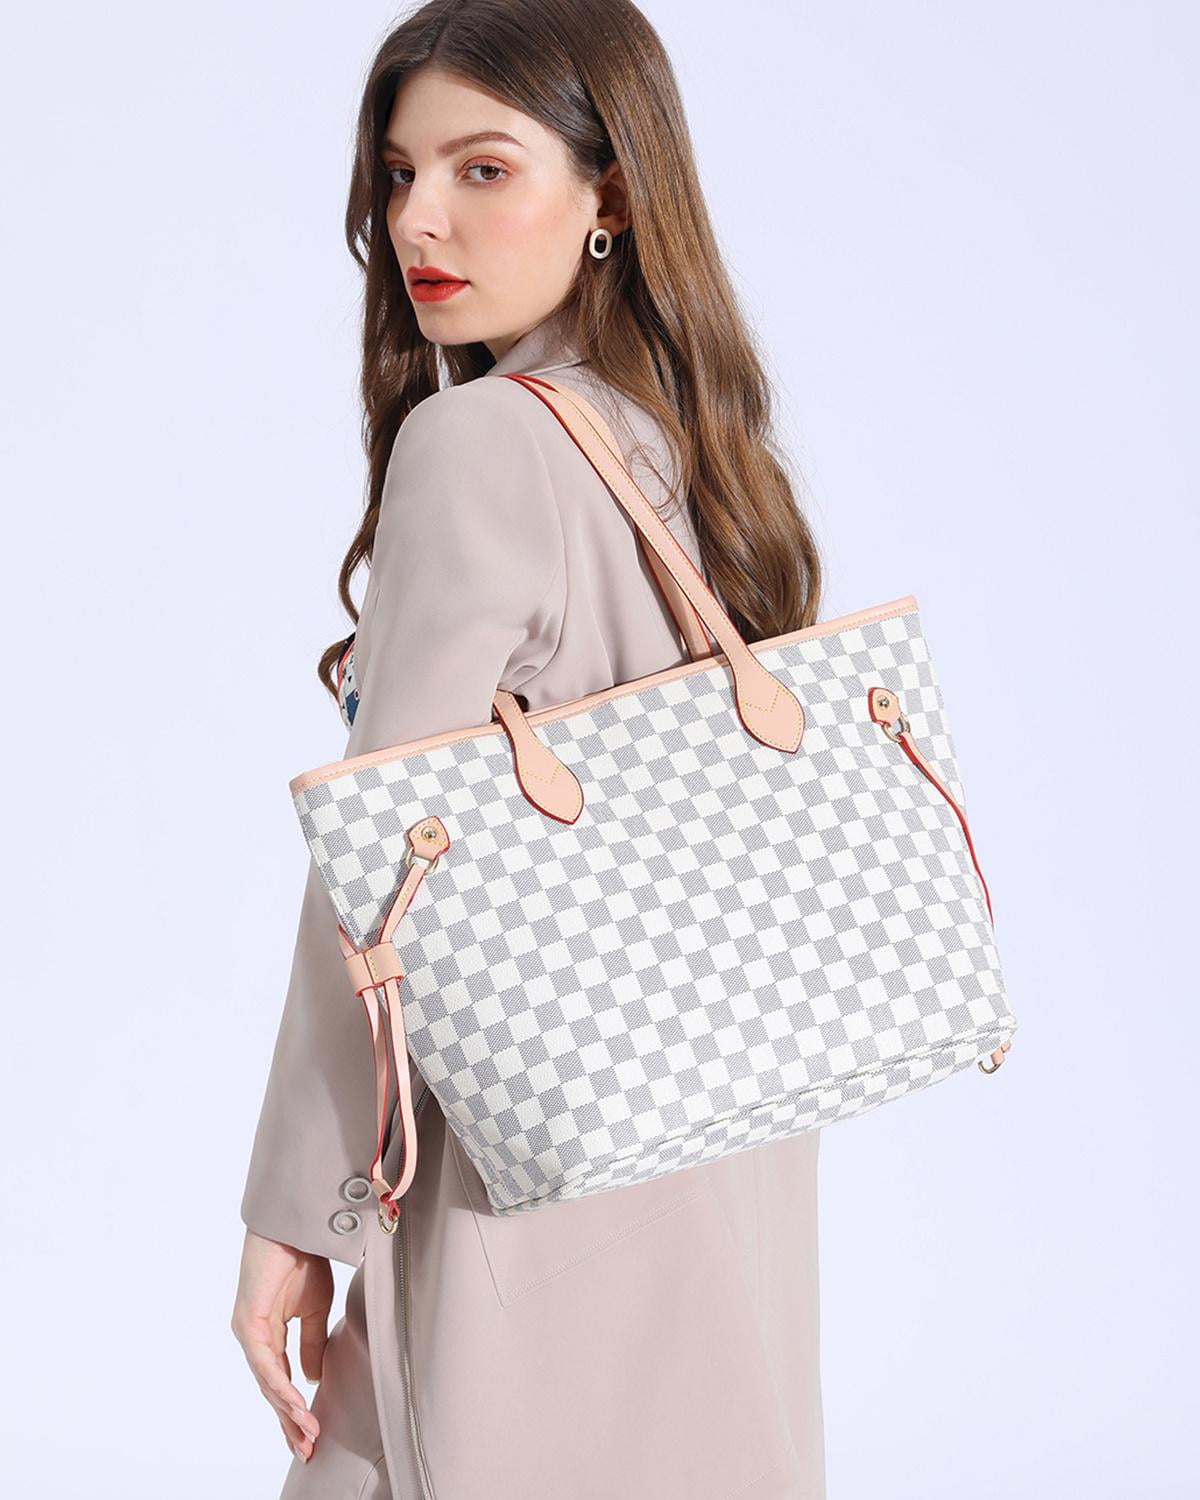 TWENTY FOUR Womens Handbags Checkered Tote Shoulder Bags Fashion Large ...